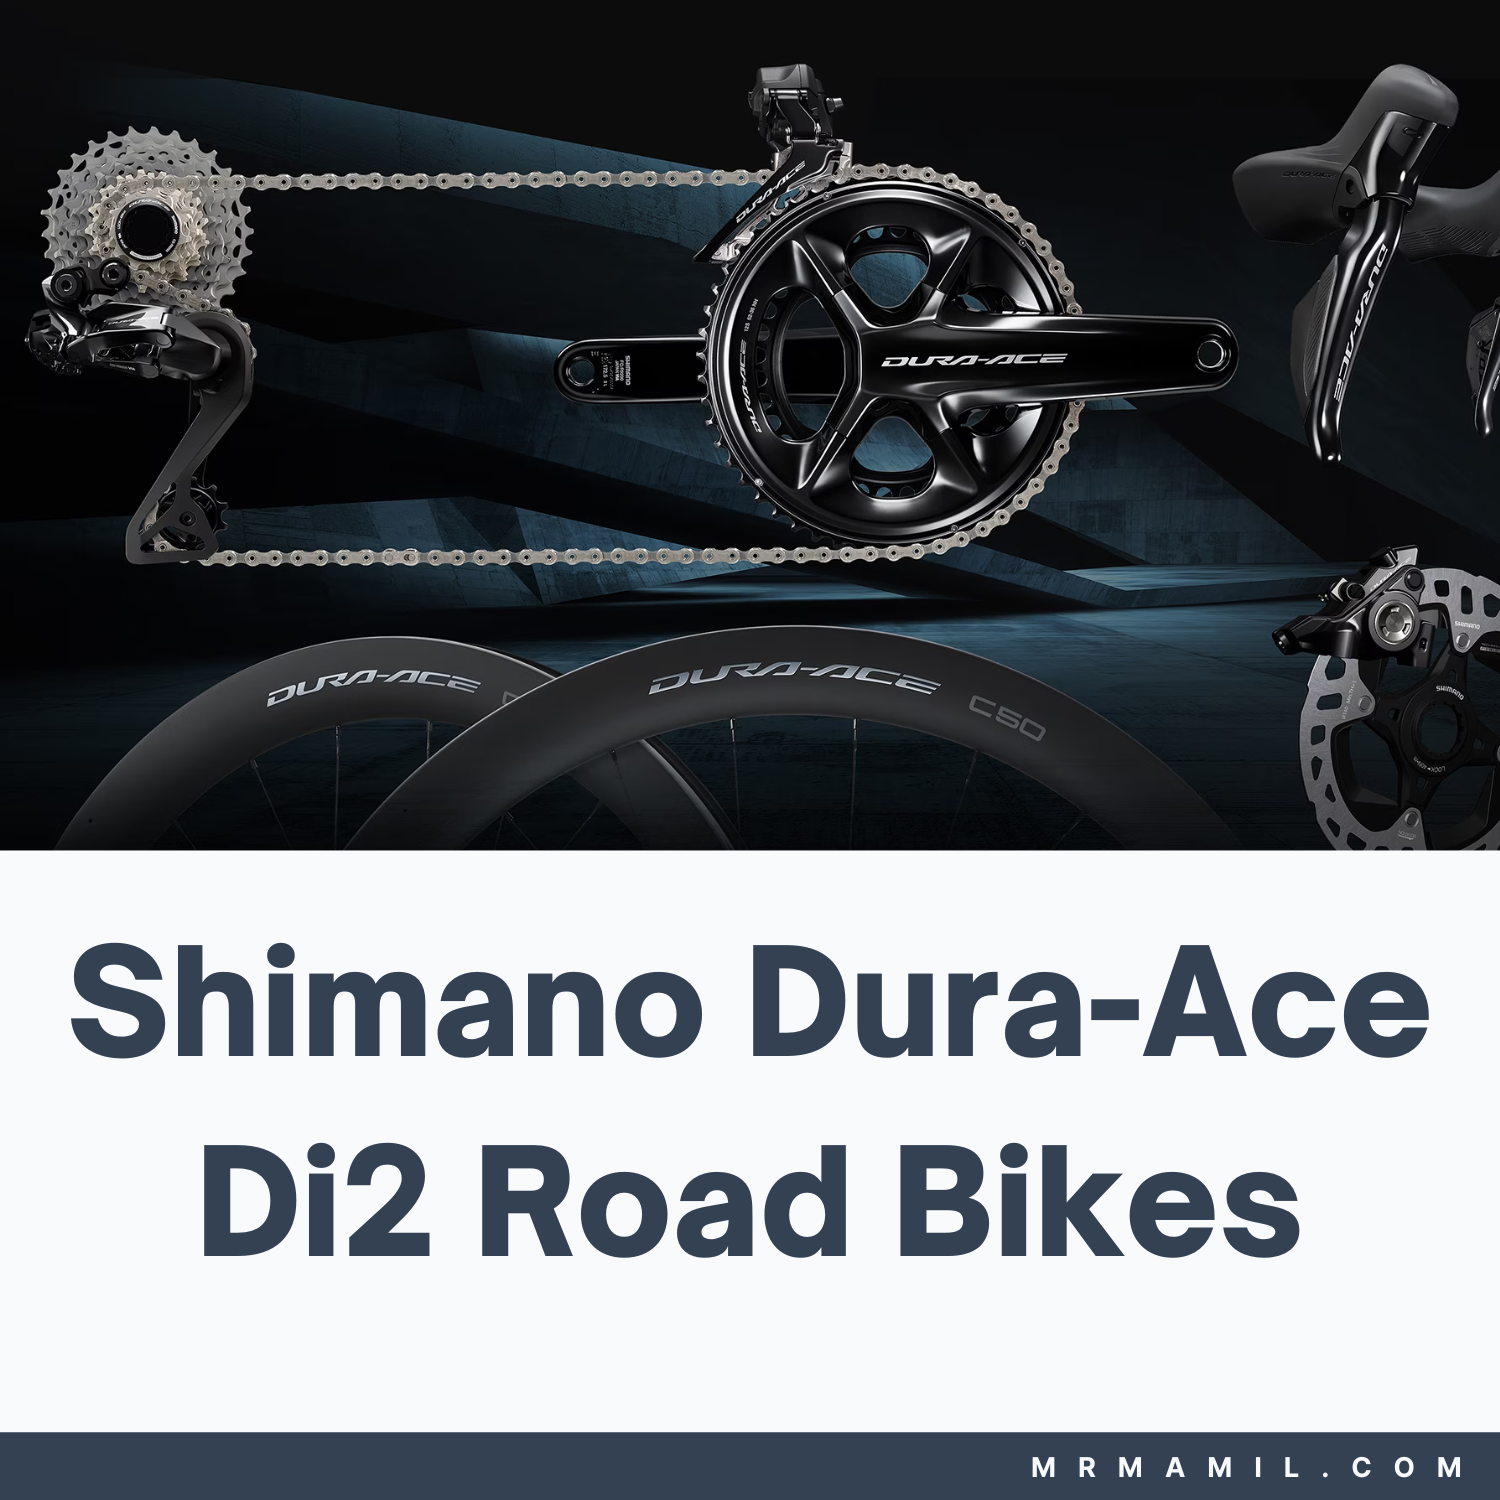 Shimano Dura-Ace Di2 Road Bikes